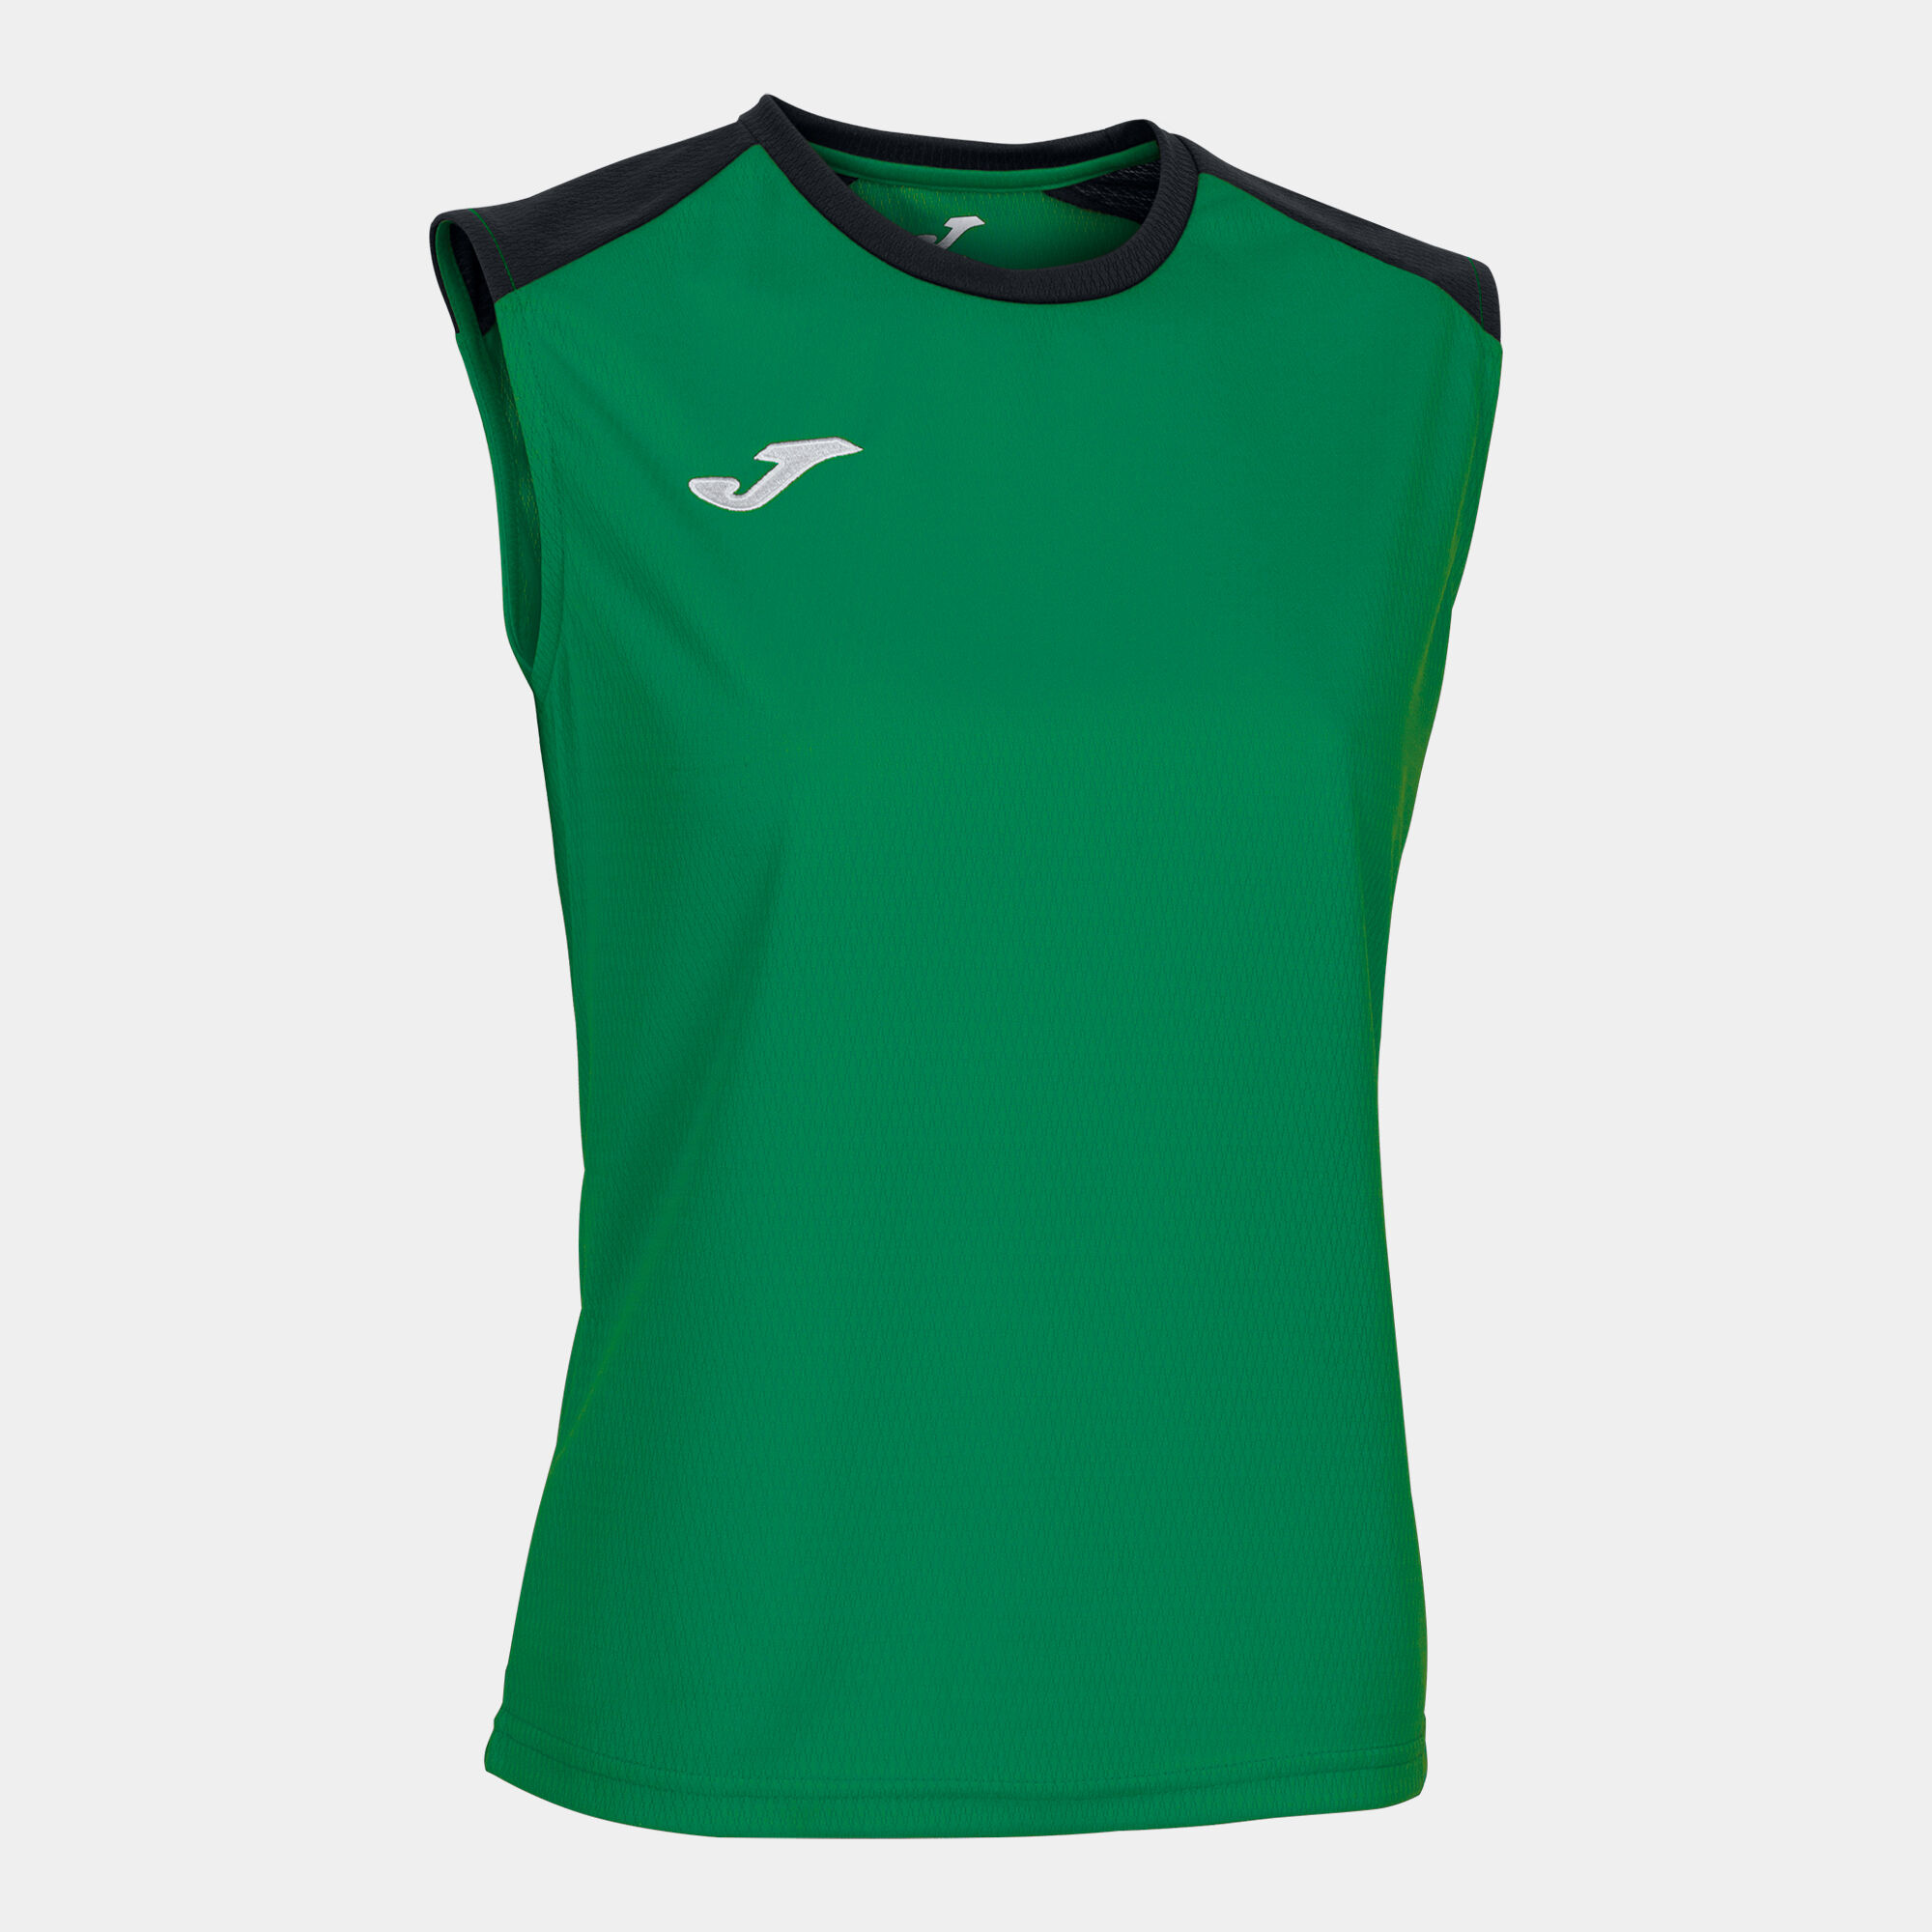 T-shirt de alça mulher Eco Championship verde preto